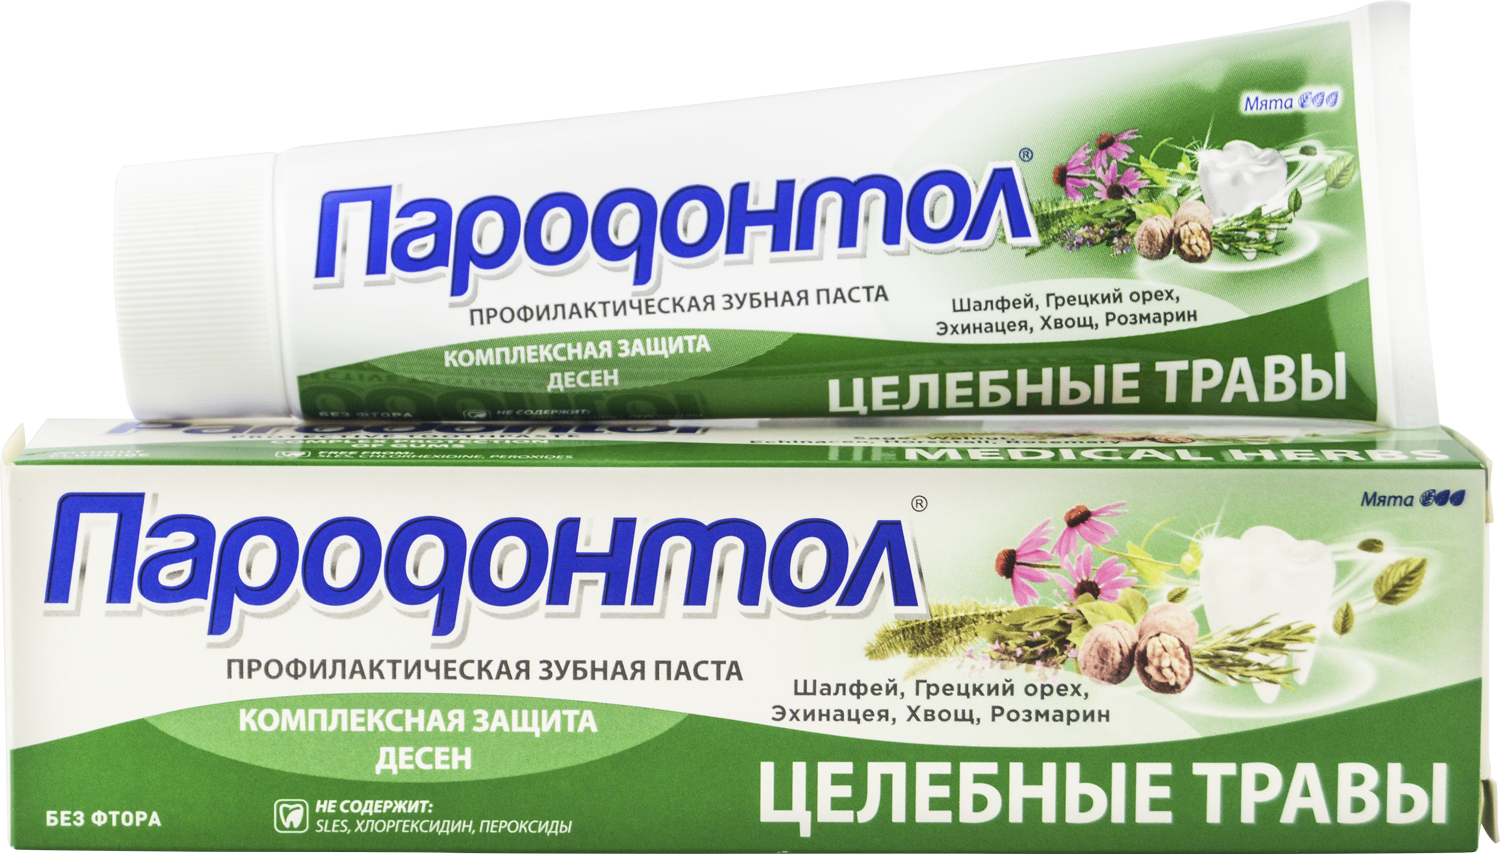 Зубная паста "Пародонтол" ("Parodontol") целебные травы 124 гр.